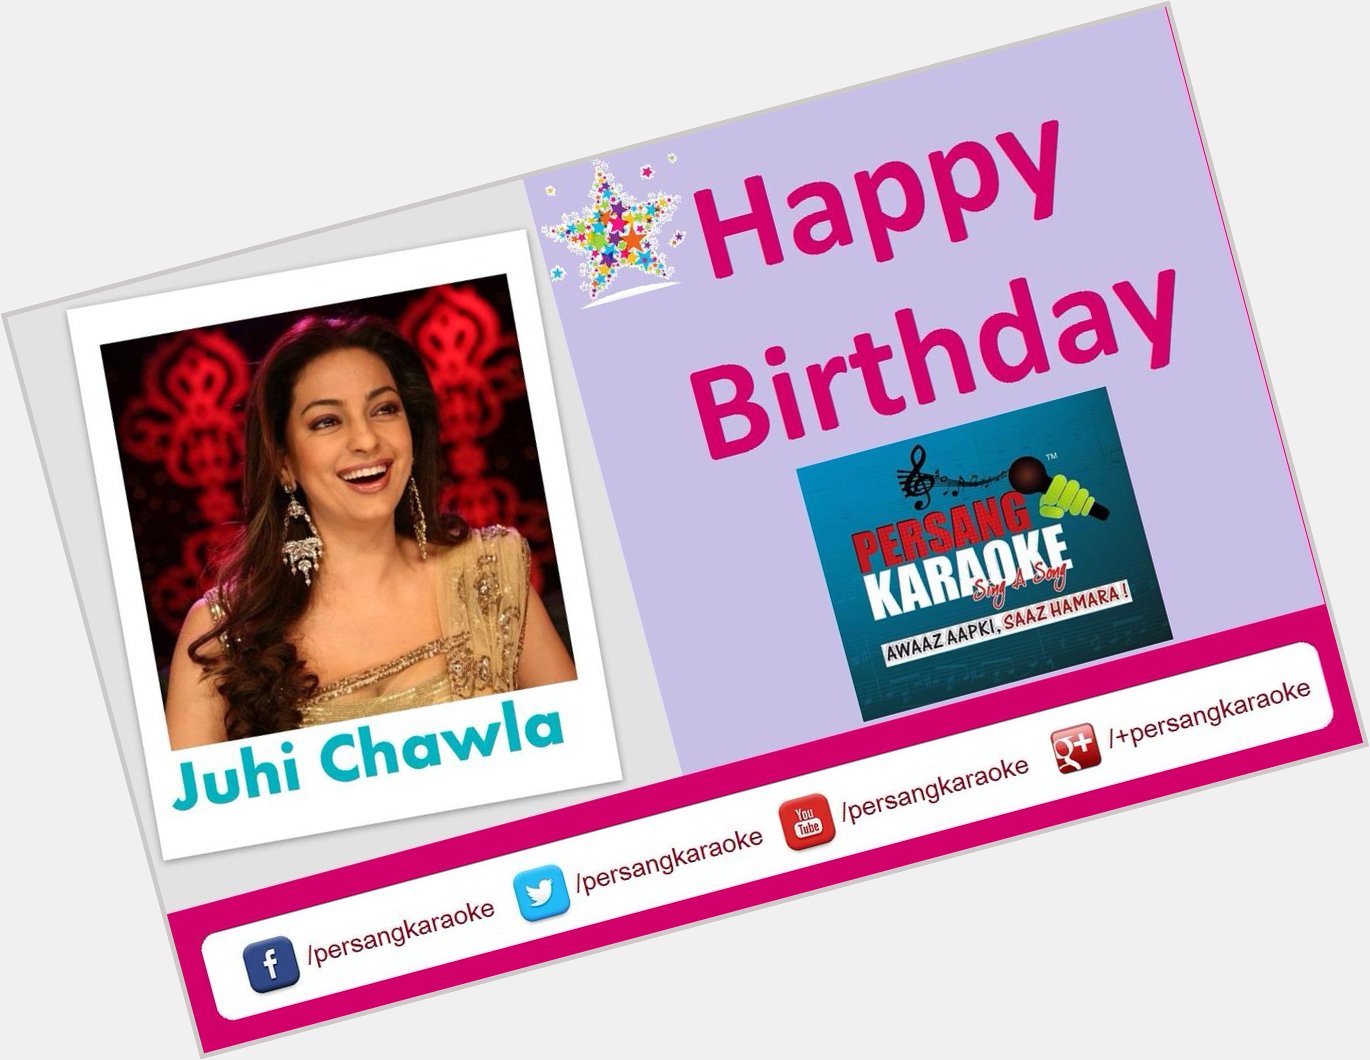 Persang Karaoke wishing Karaokelicious Happy Birthday to beautiful actress Juhi Chawla | Actress  